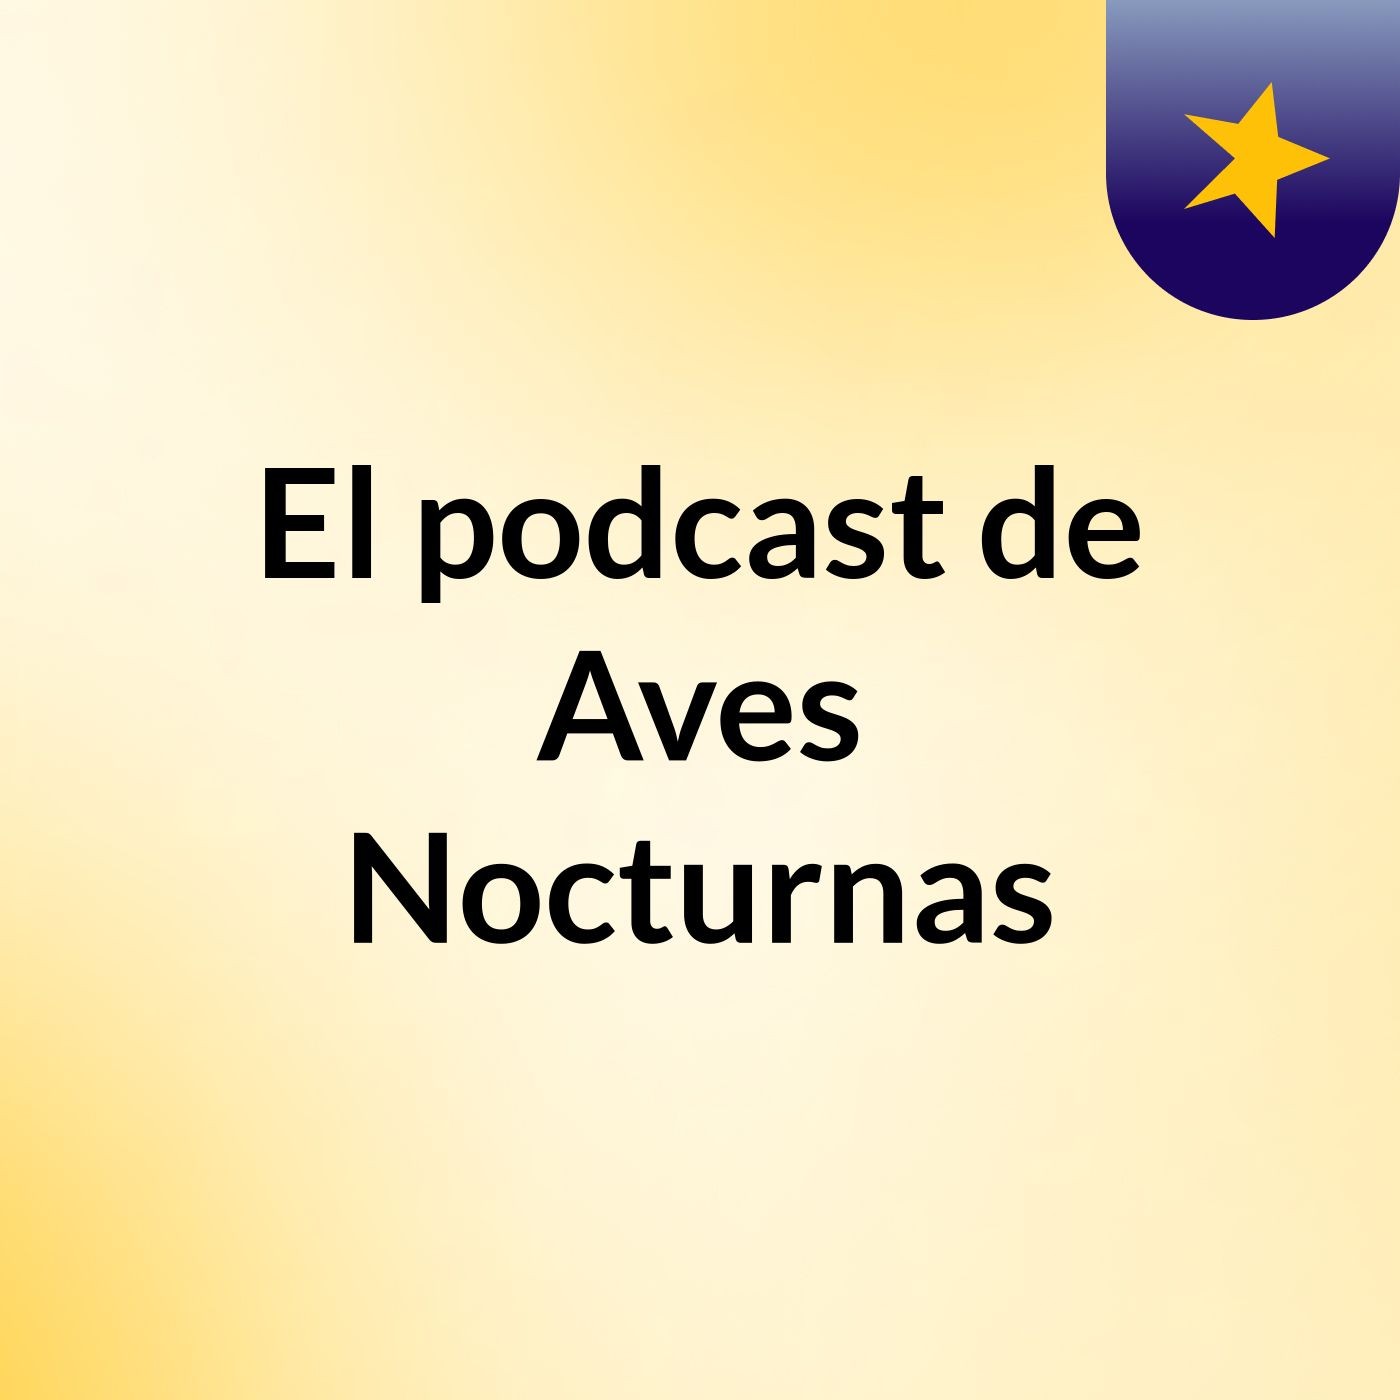 El podcast de Aves Nocturnas